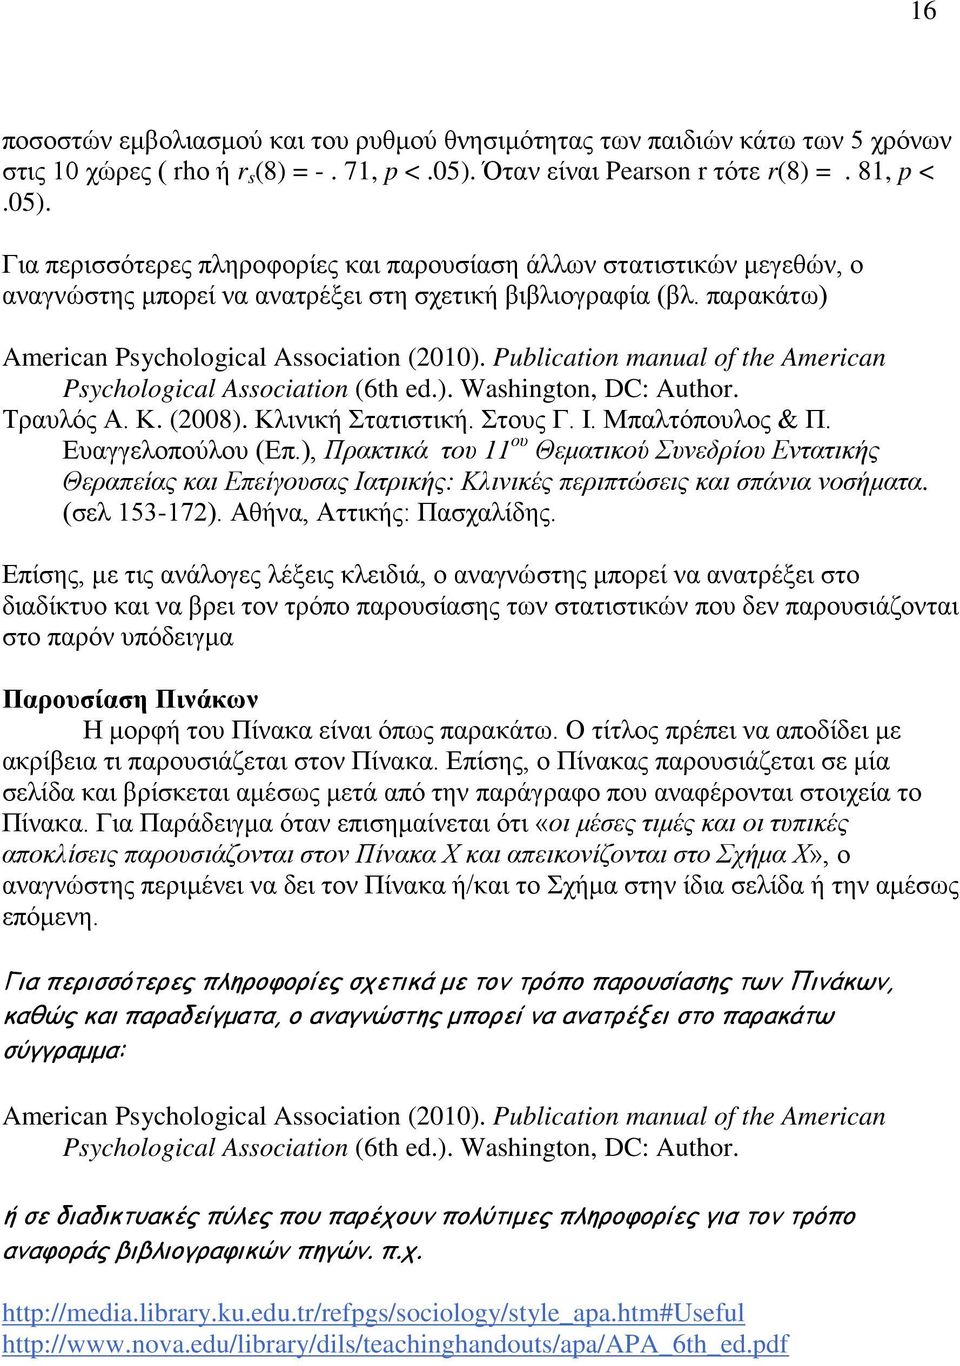 παρακάτω) American Psychological Association (2010). Publication manual of the American Psychological Association (6th ed.). Washington, DC: Author. Τραυλός Α. Κ. (2008). Κλινική Στατιστική. Στους Γ.